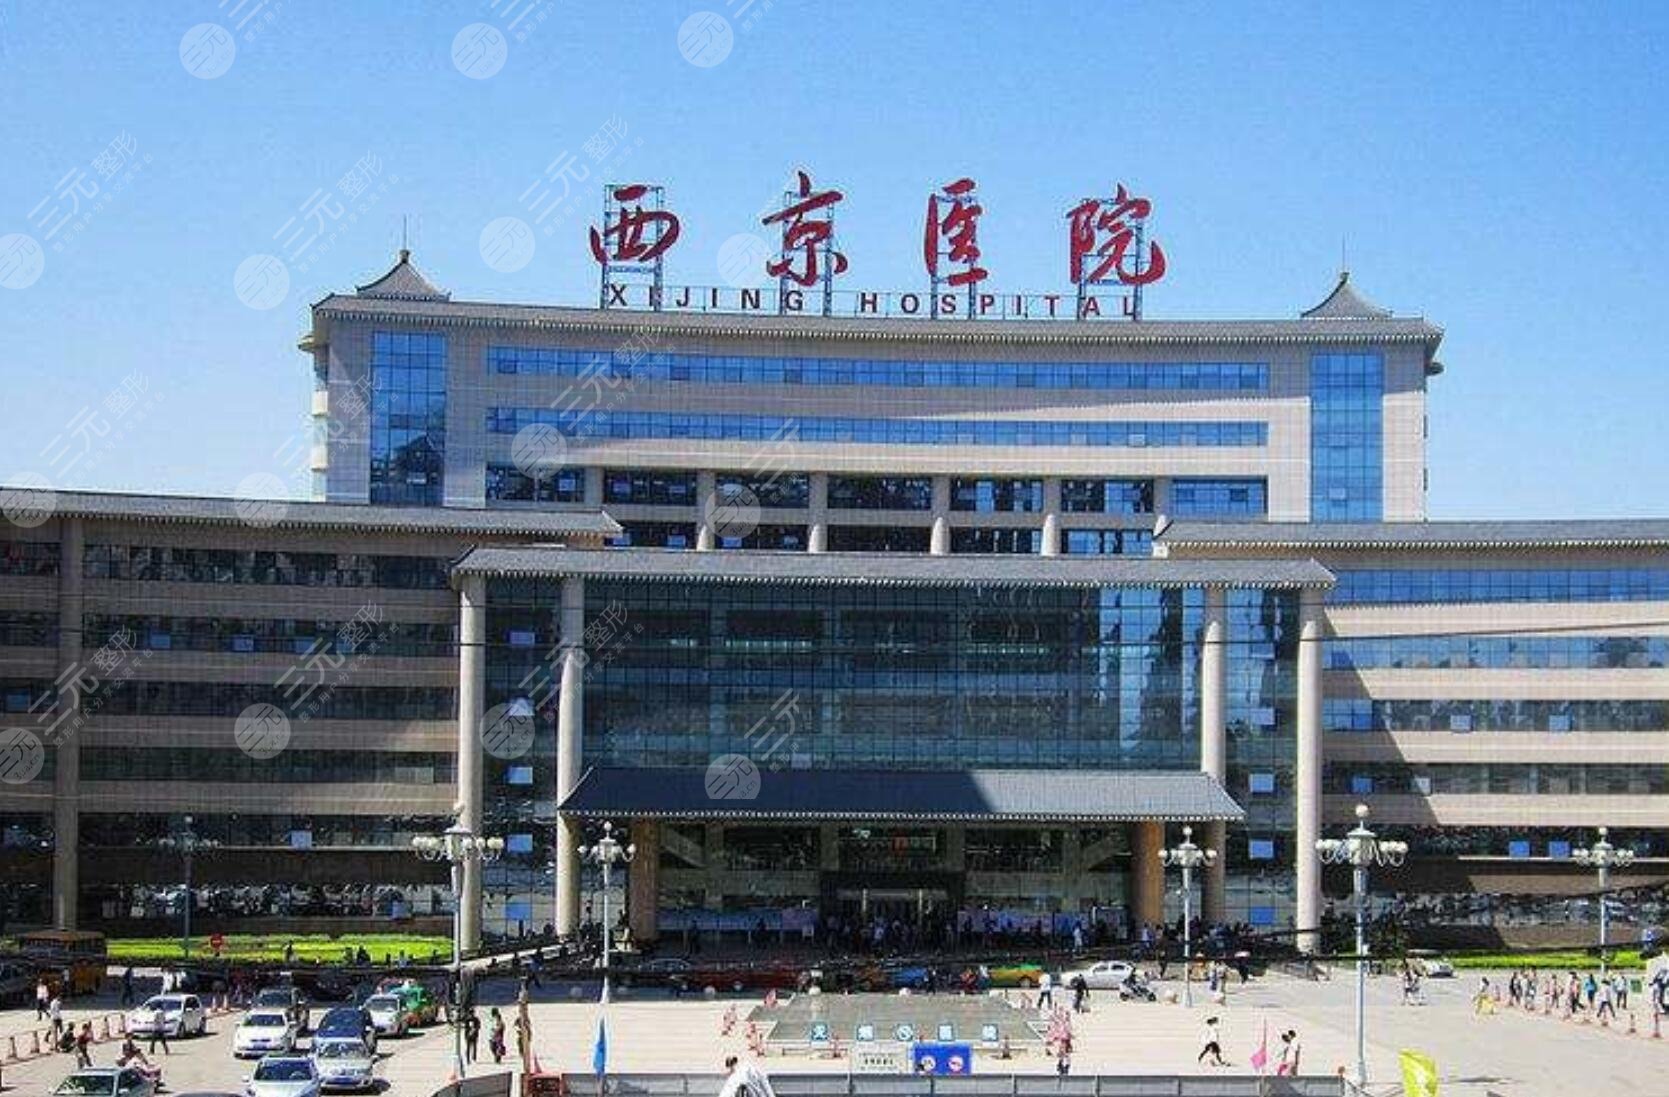 陕西省十大医院排名榜2021版本